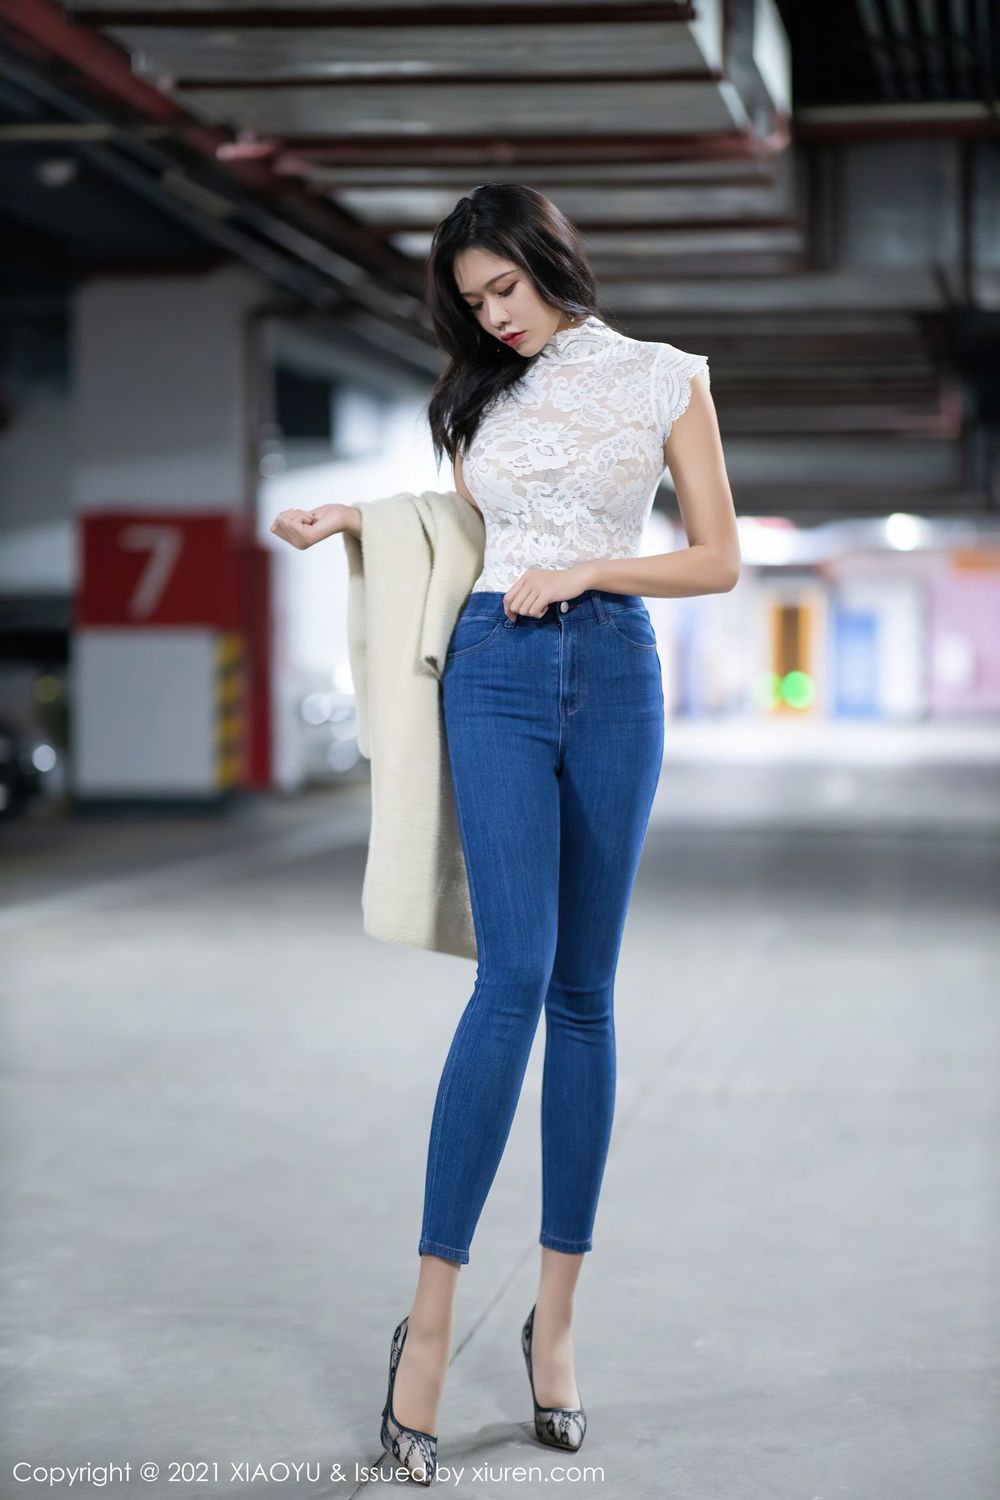 美女模特小娜比直率牛仔裤镂空内衣车拍主题写真